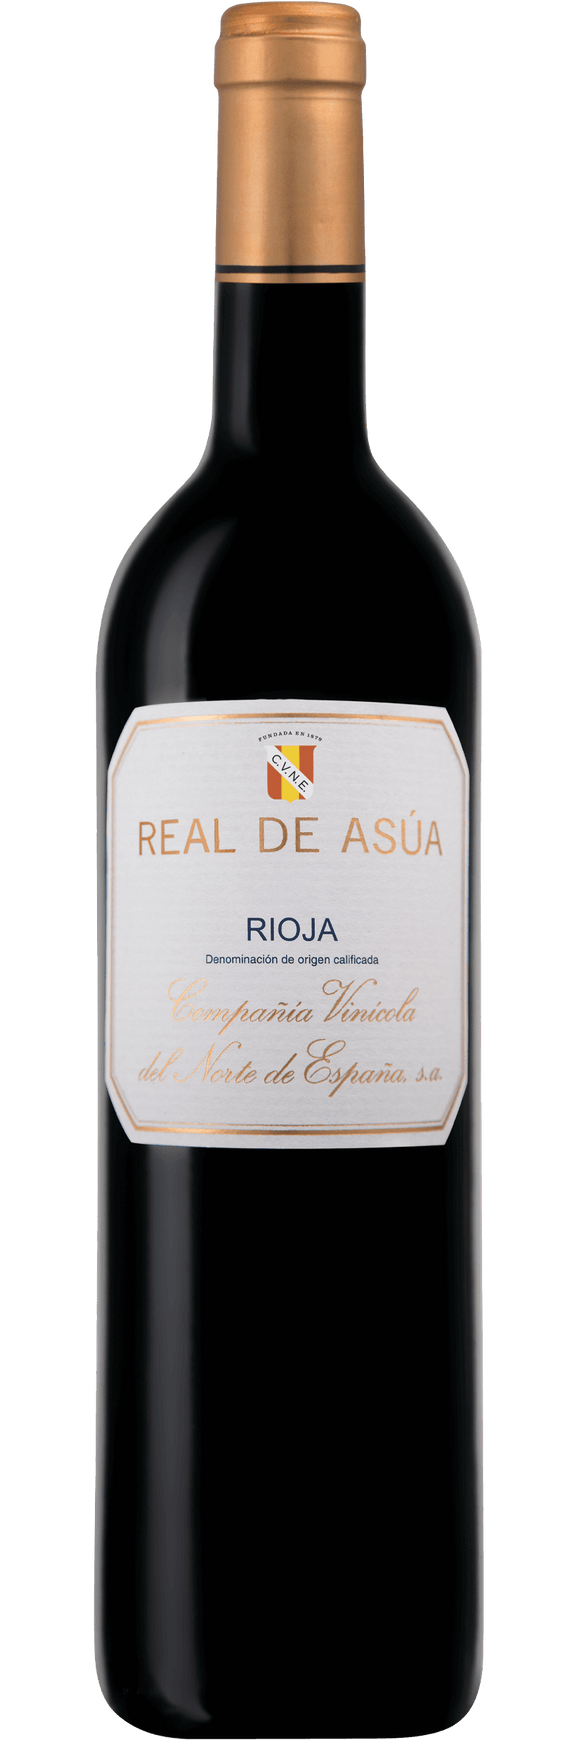 Real de Asúa, Rioja, 2015